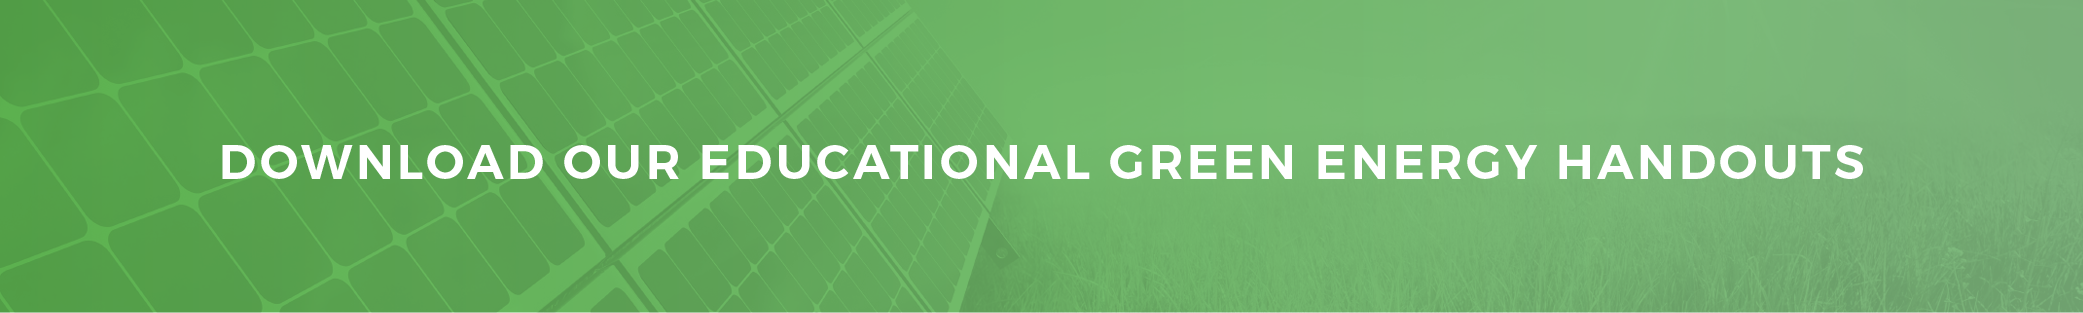 Green Energy Handout Download